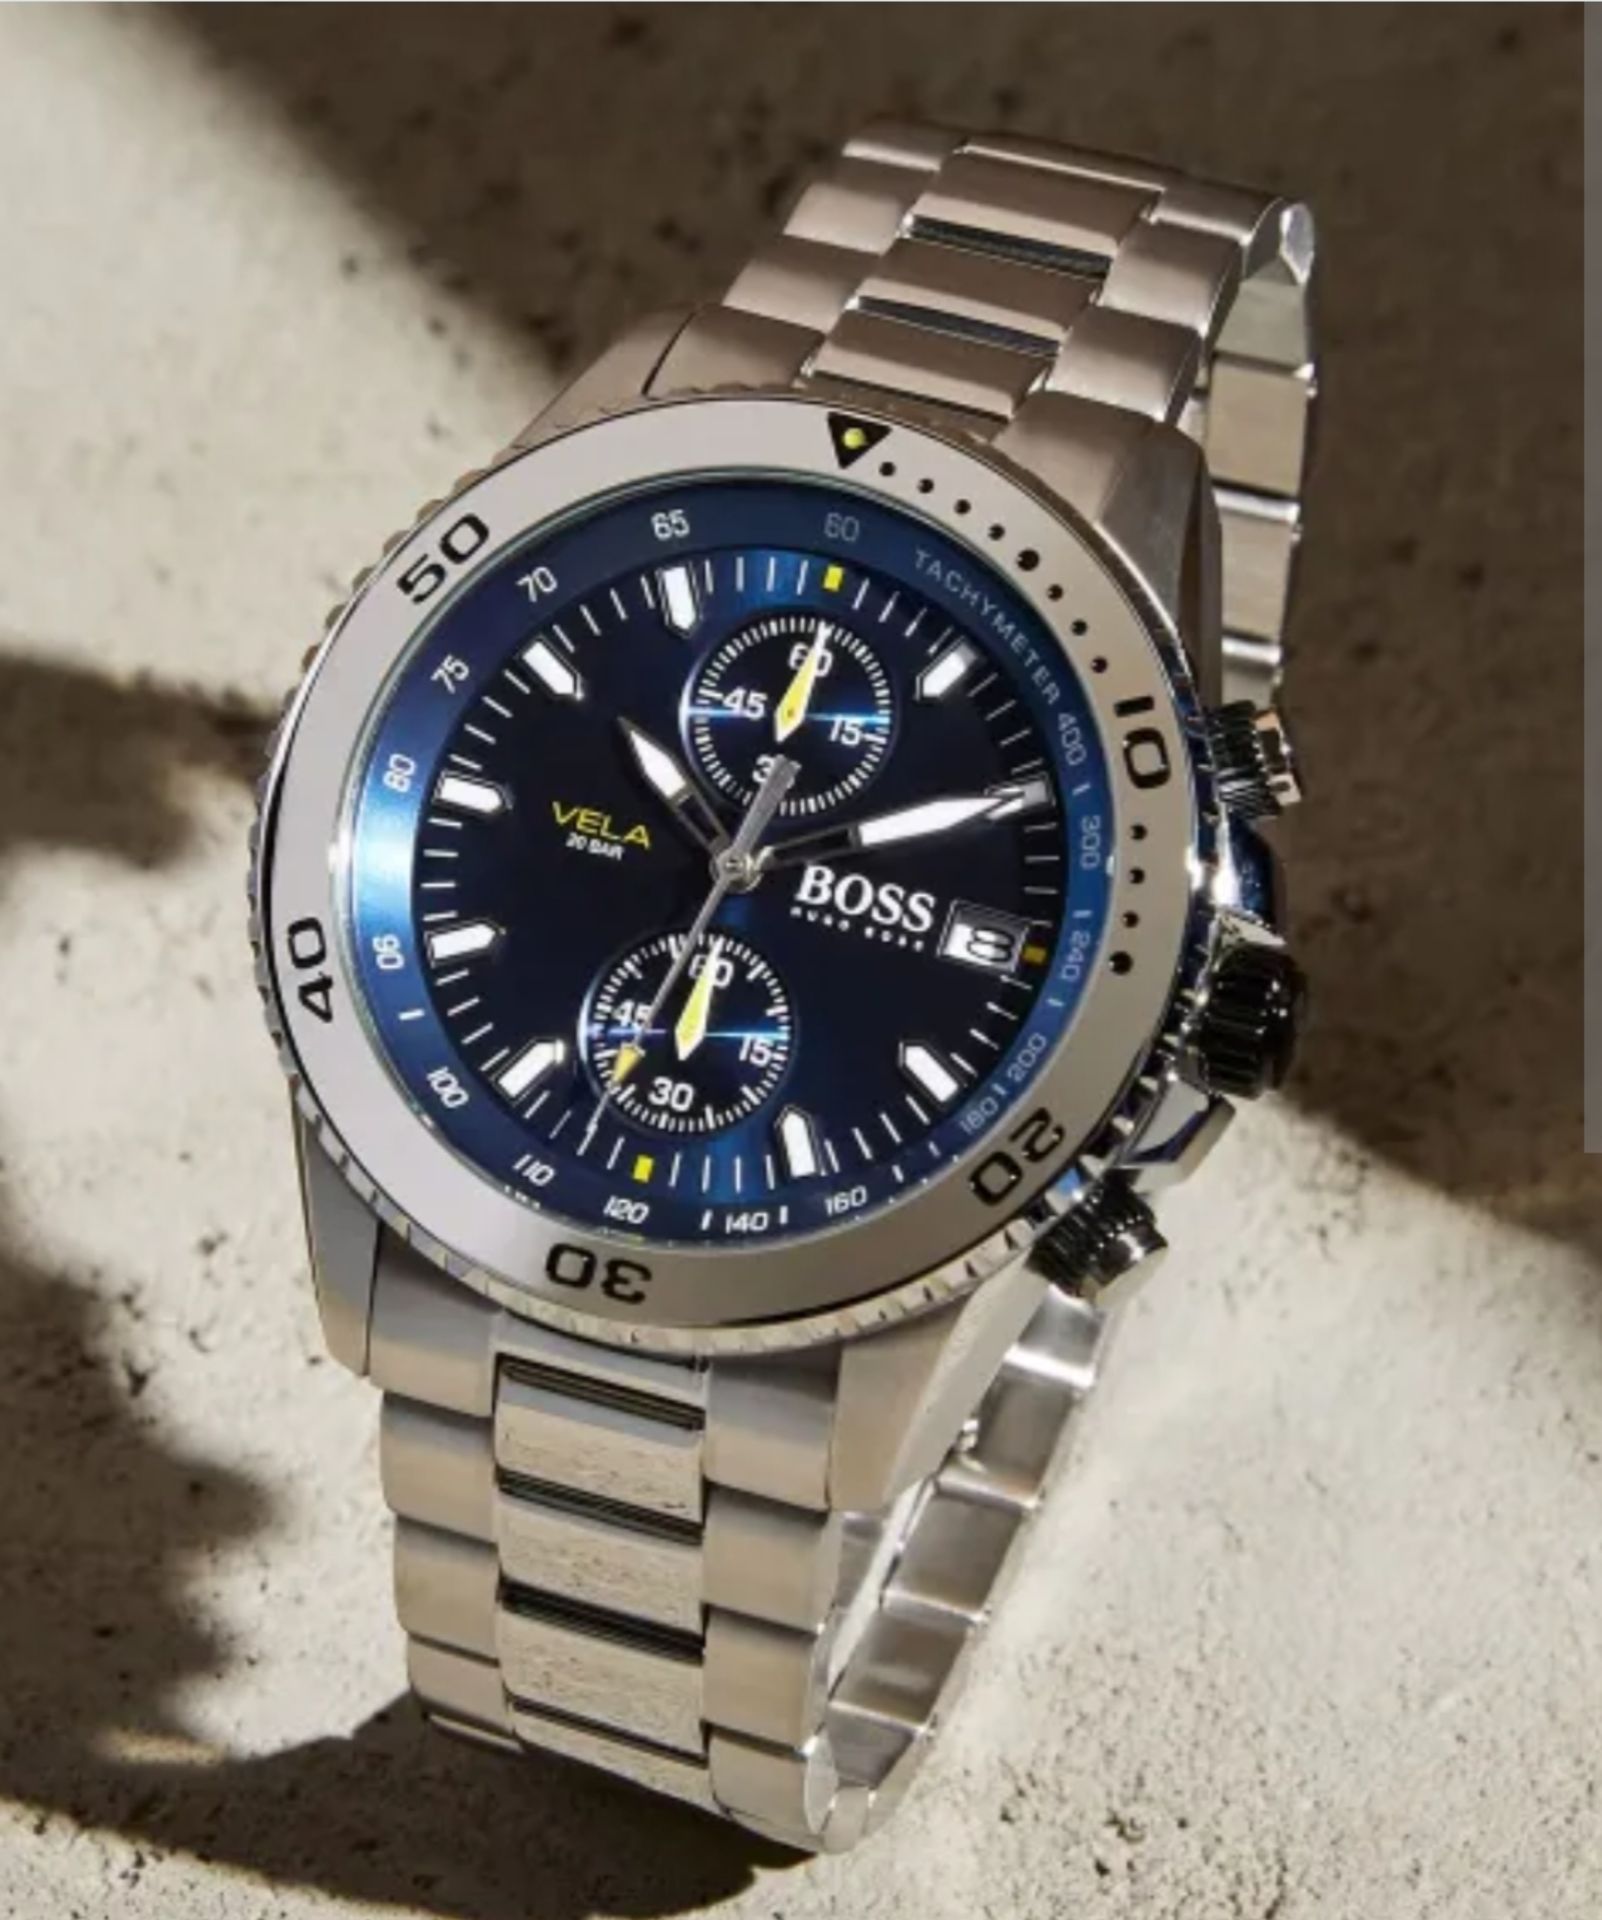 Hugo Boss 1513775 Men's Vela Silver Stainless Steel Bracelet Quartz Chronograph Watch - Image 9 of 10